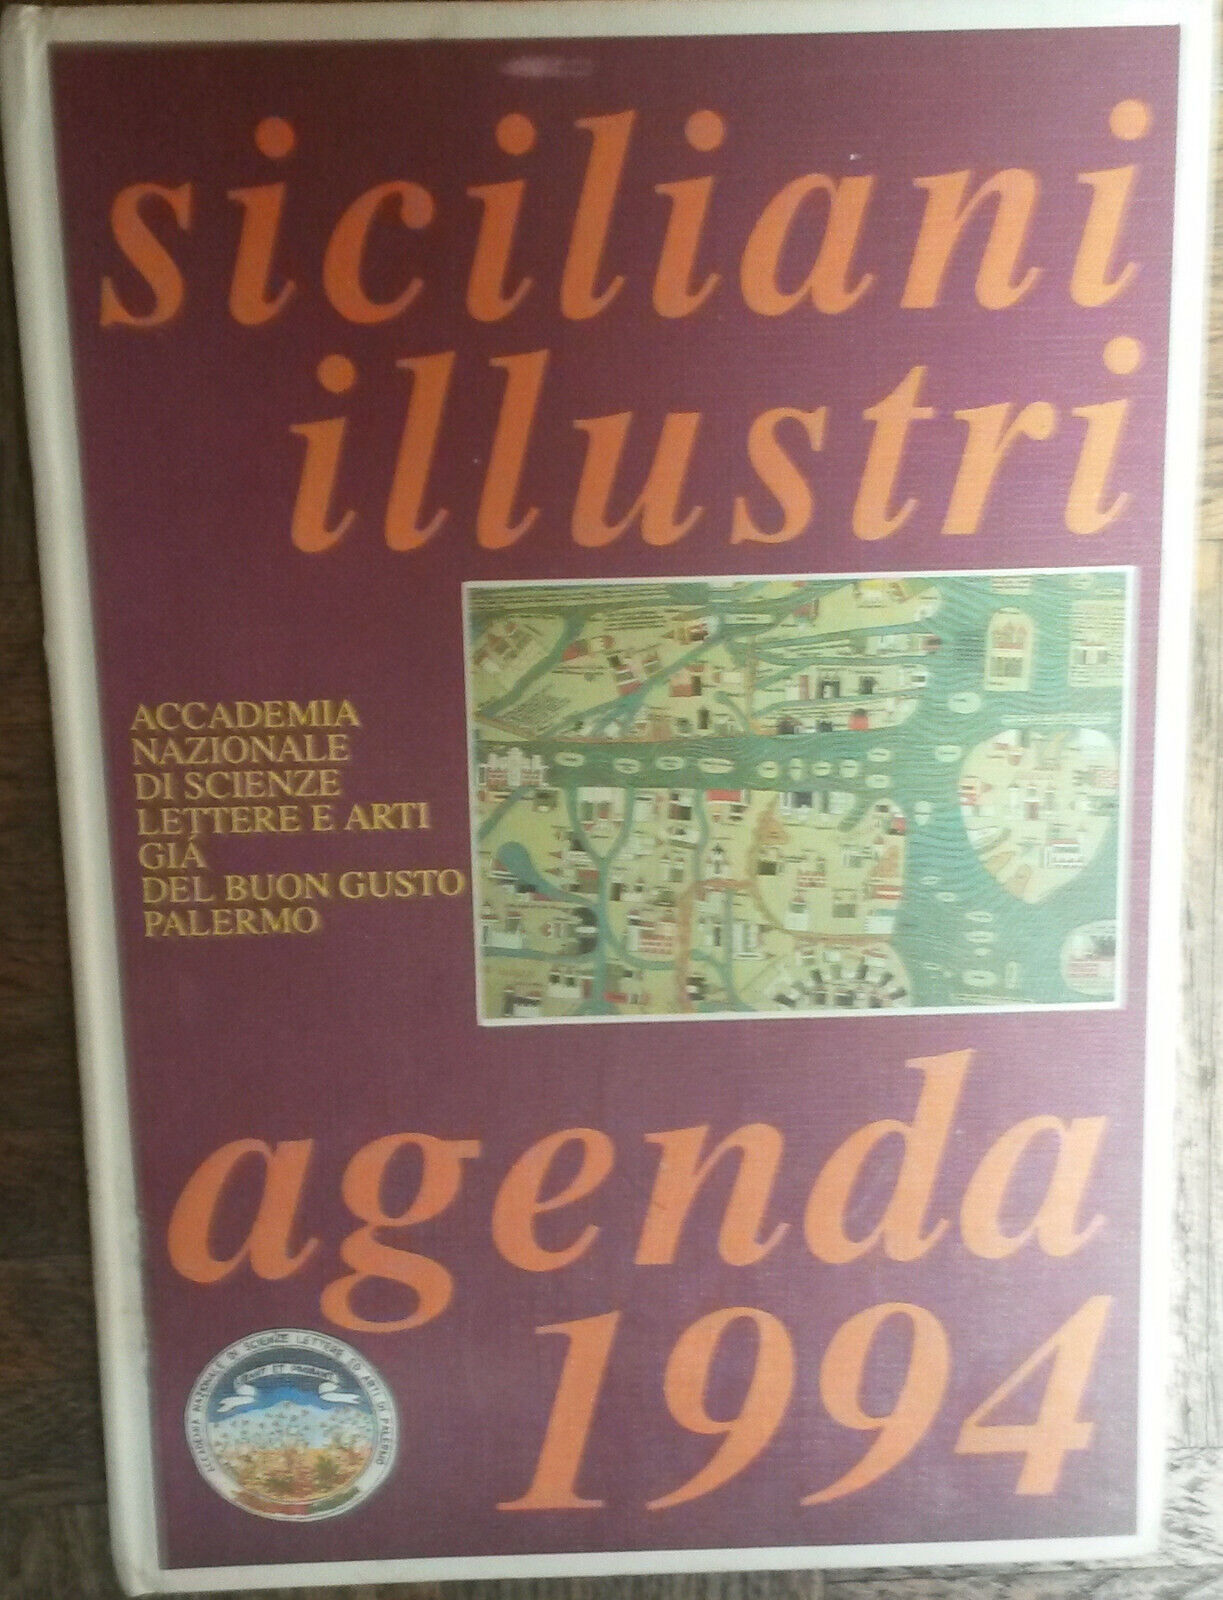 Siciliani Illustri - AA.VV. - Presso L'autore ,1994 - R